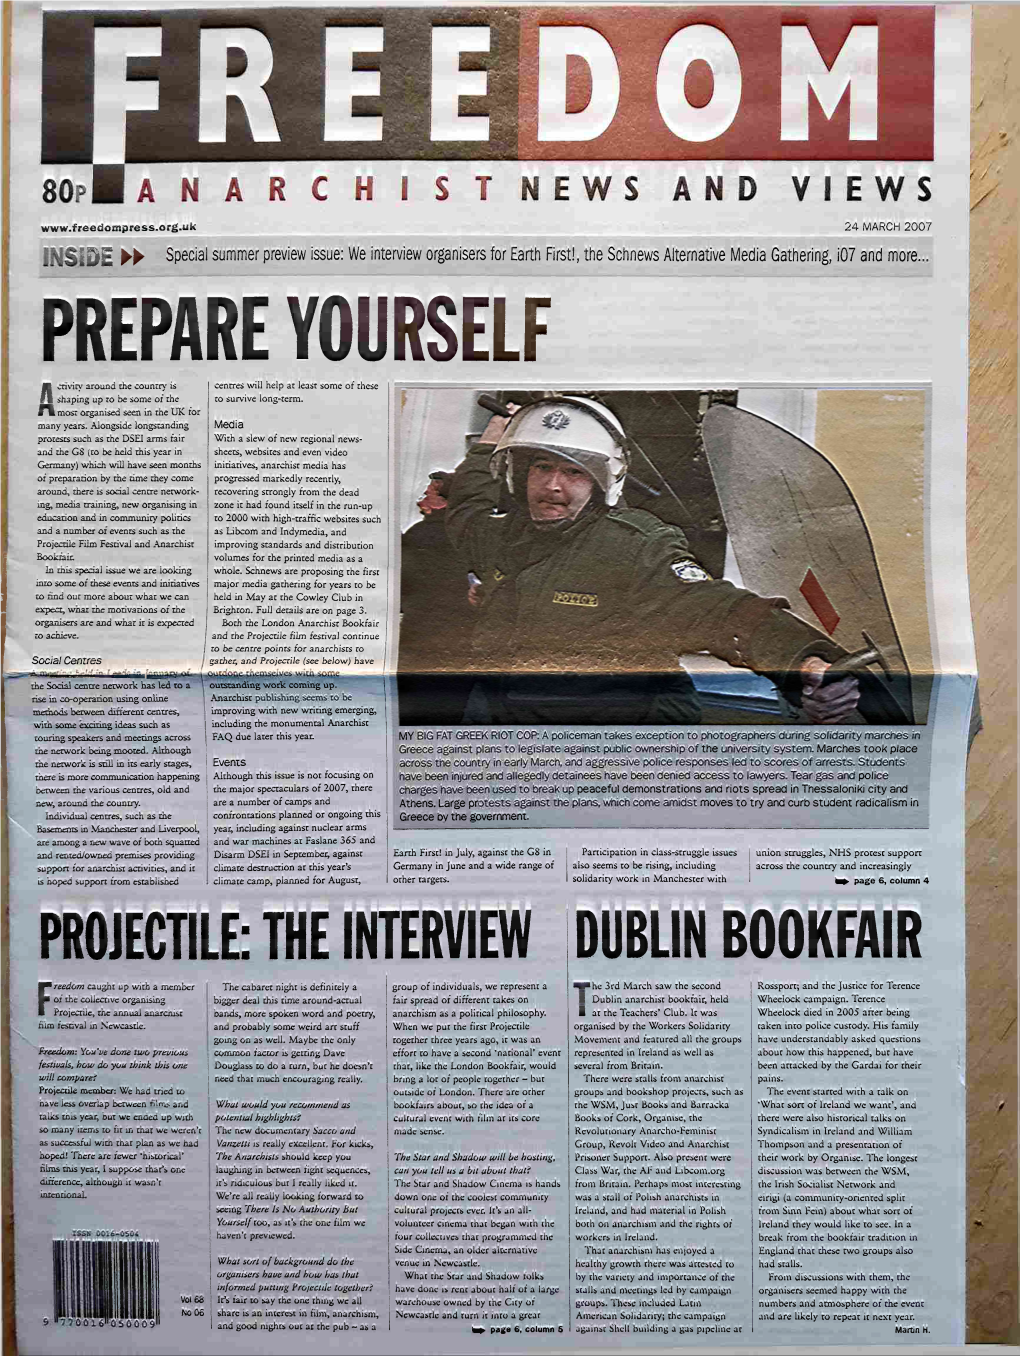 The Interview Dublin Bookfair